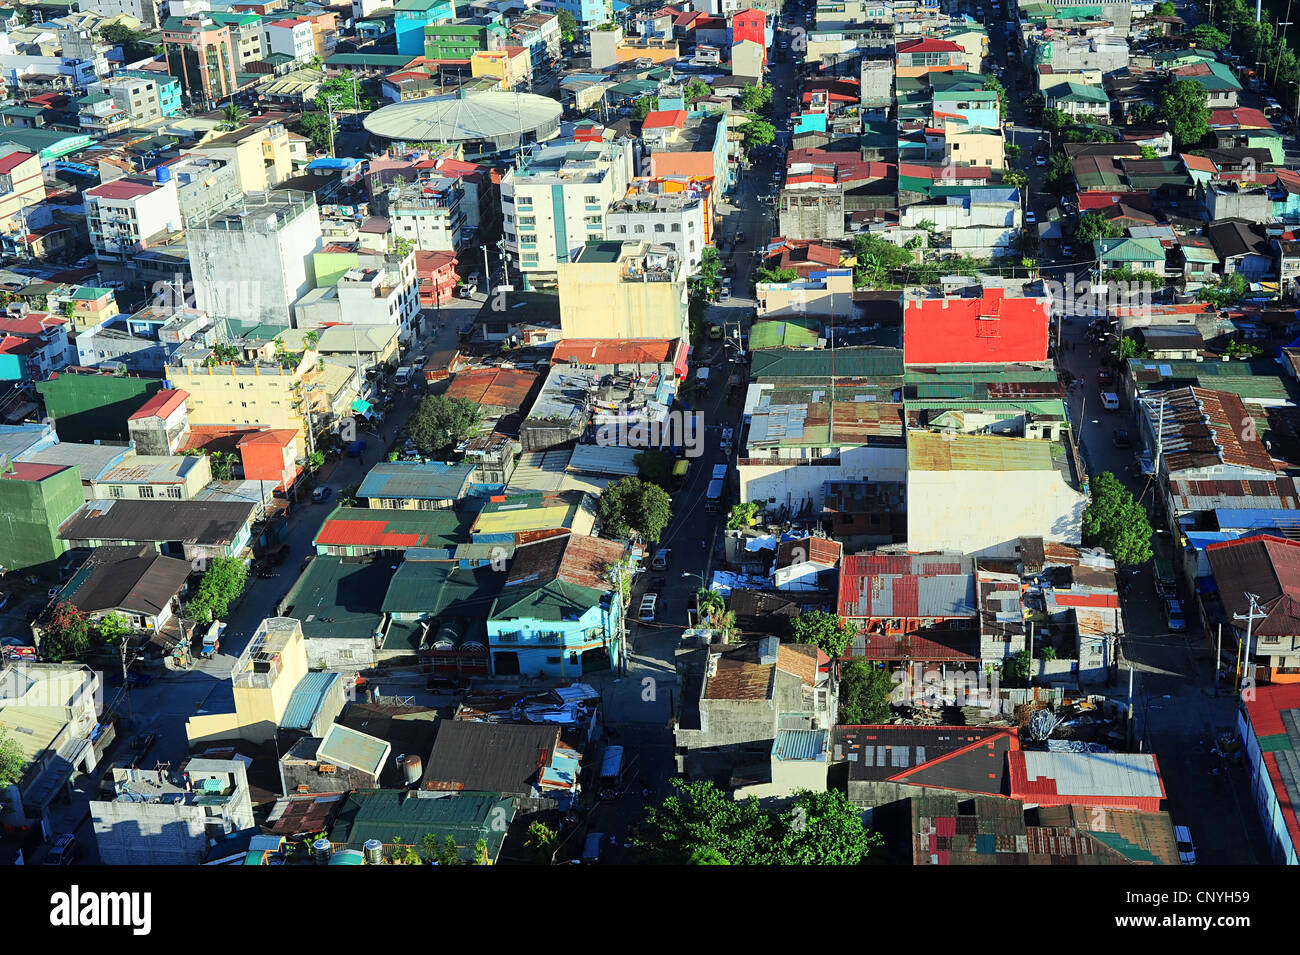 Vue aérienne sur le bidonville de Makati - quartier financier moderne et d'affaires de la région métropolitaine de Manille, Philippines Banque D'Images